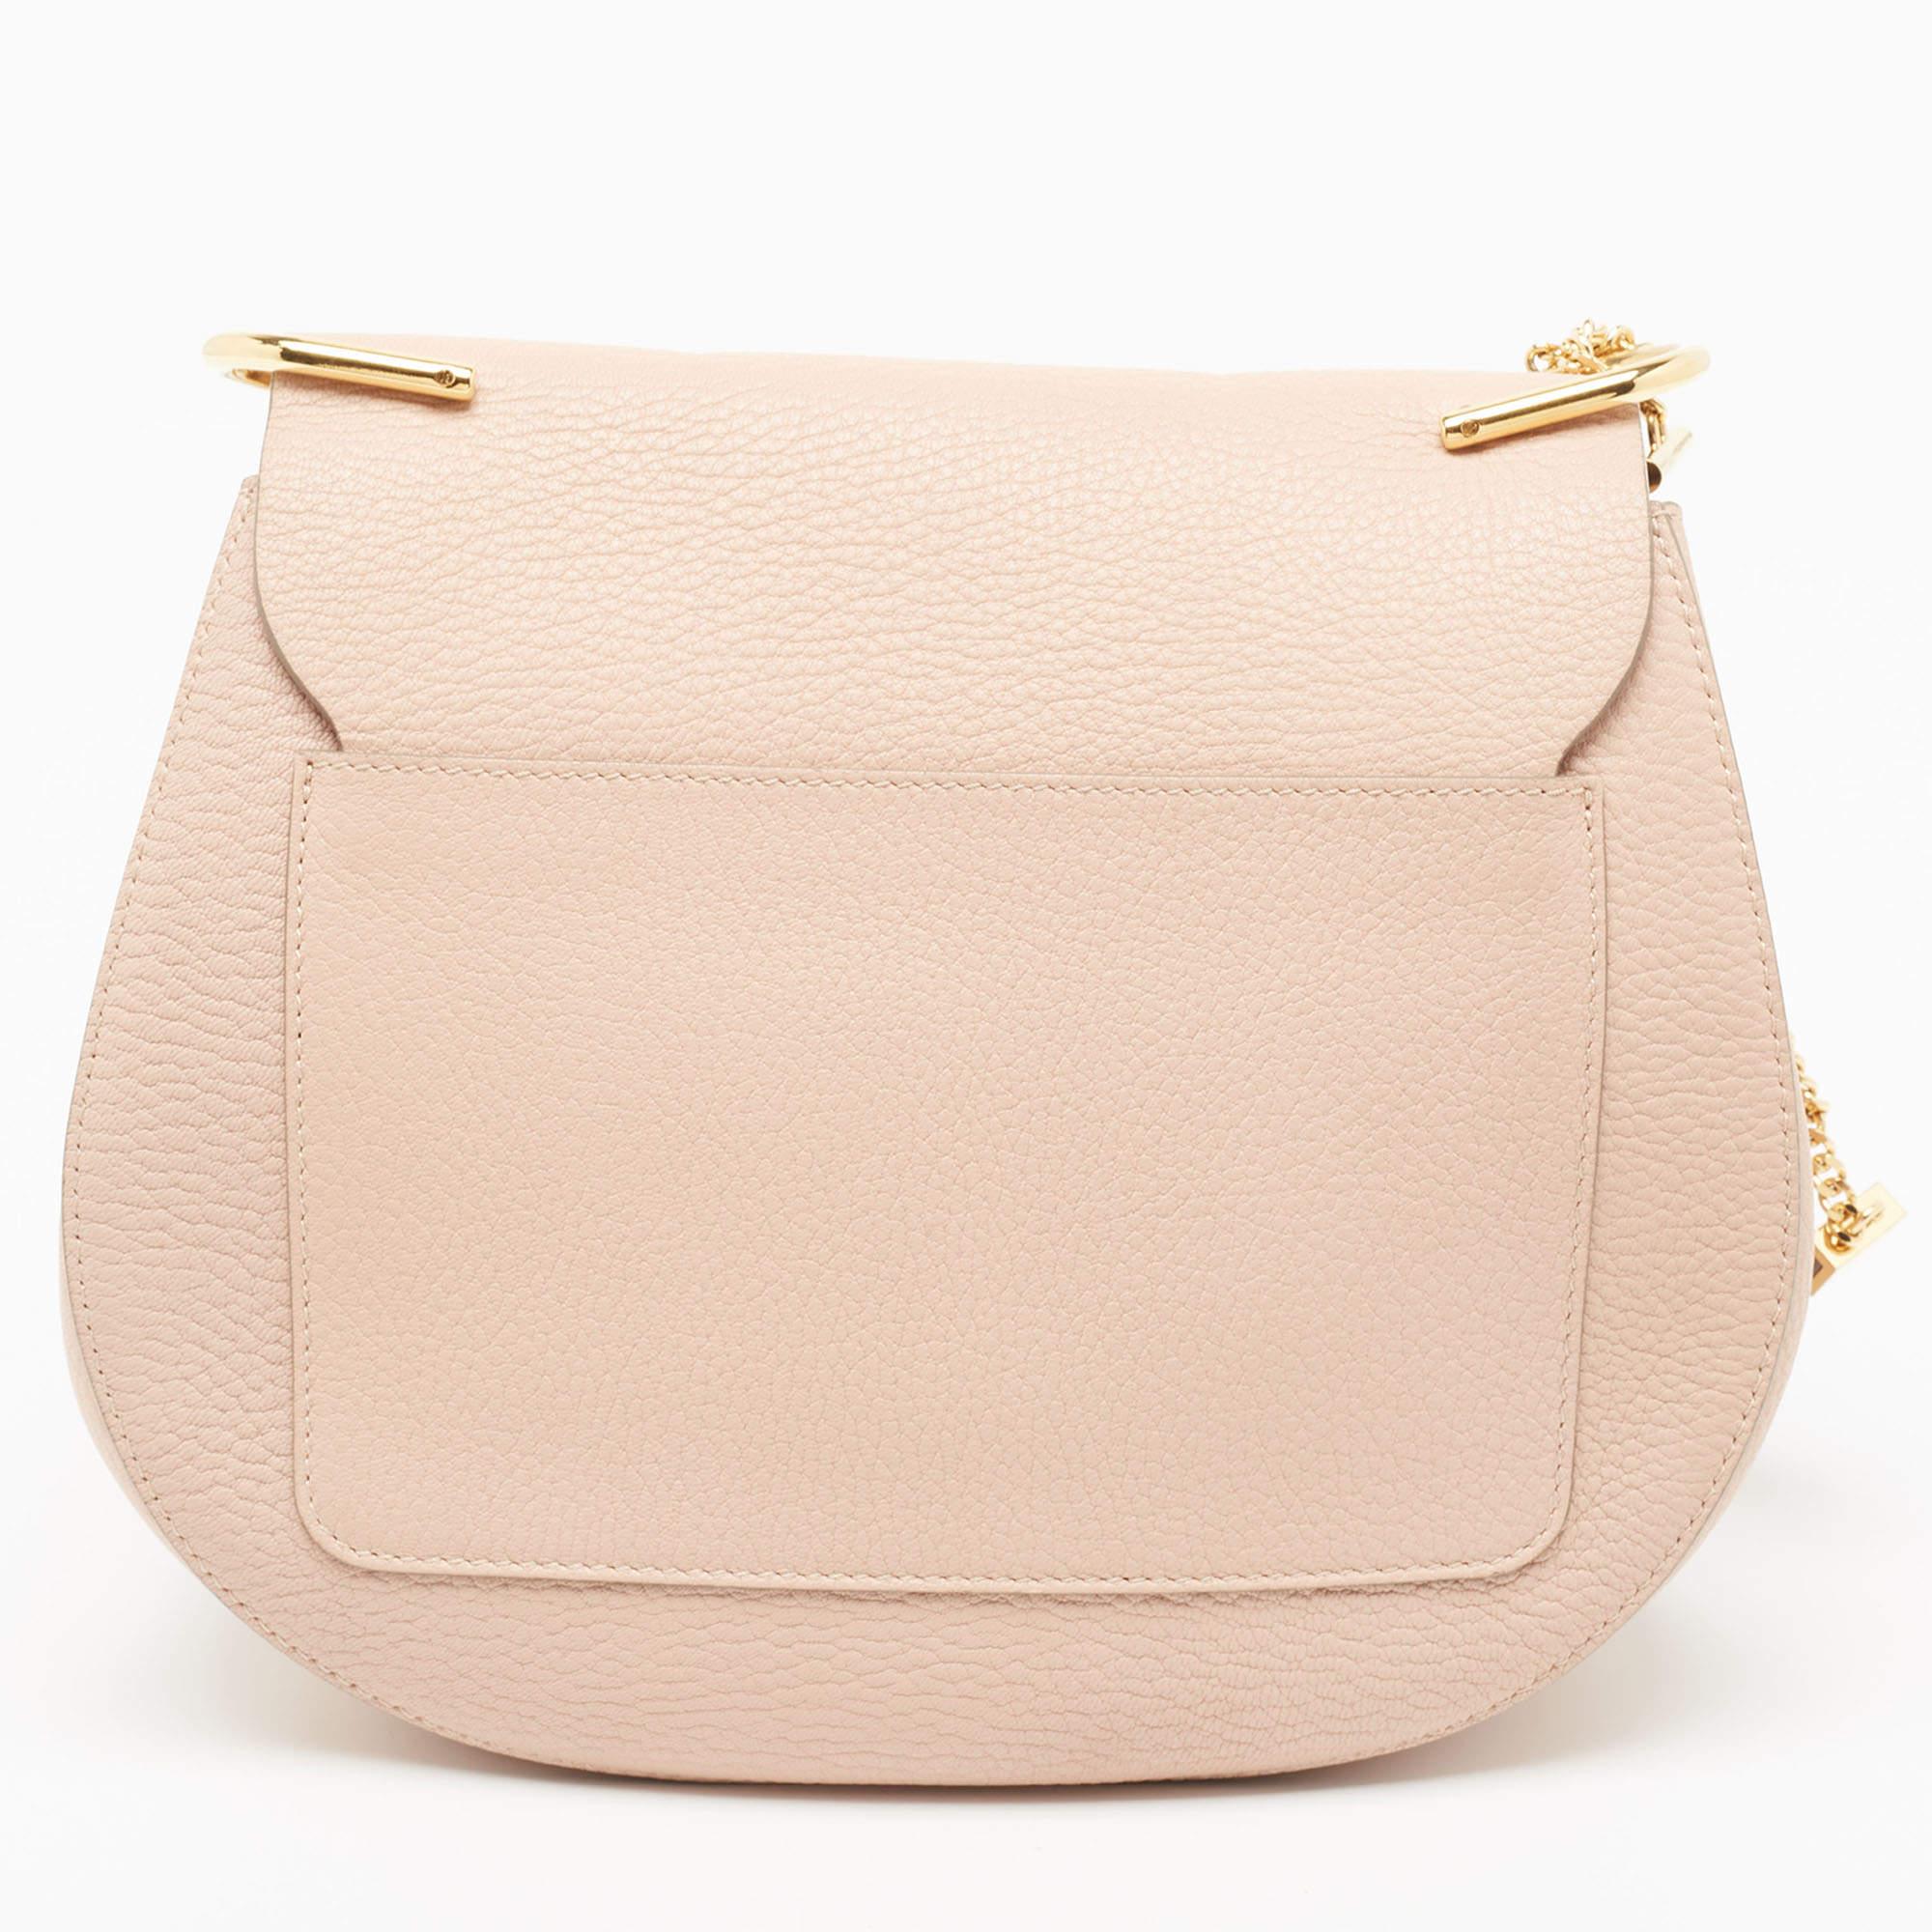 Chloe Rose Poudre Leather Large Drew Shoulder Bag For Sale 3